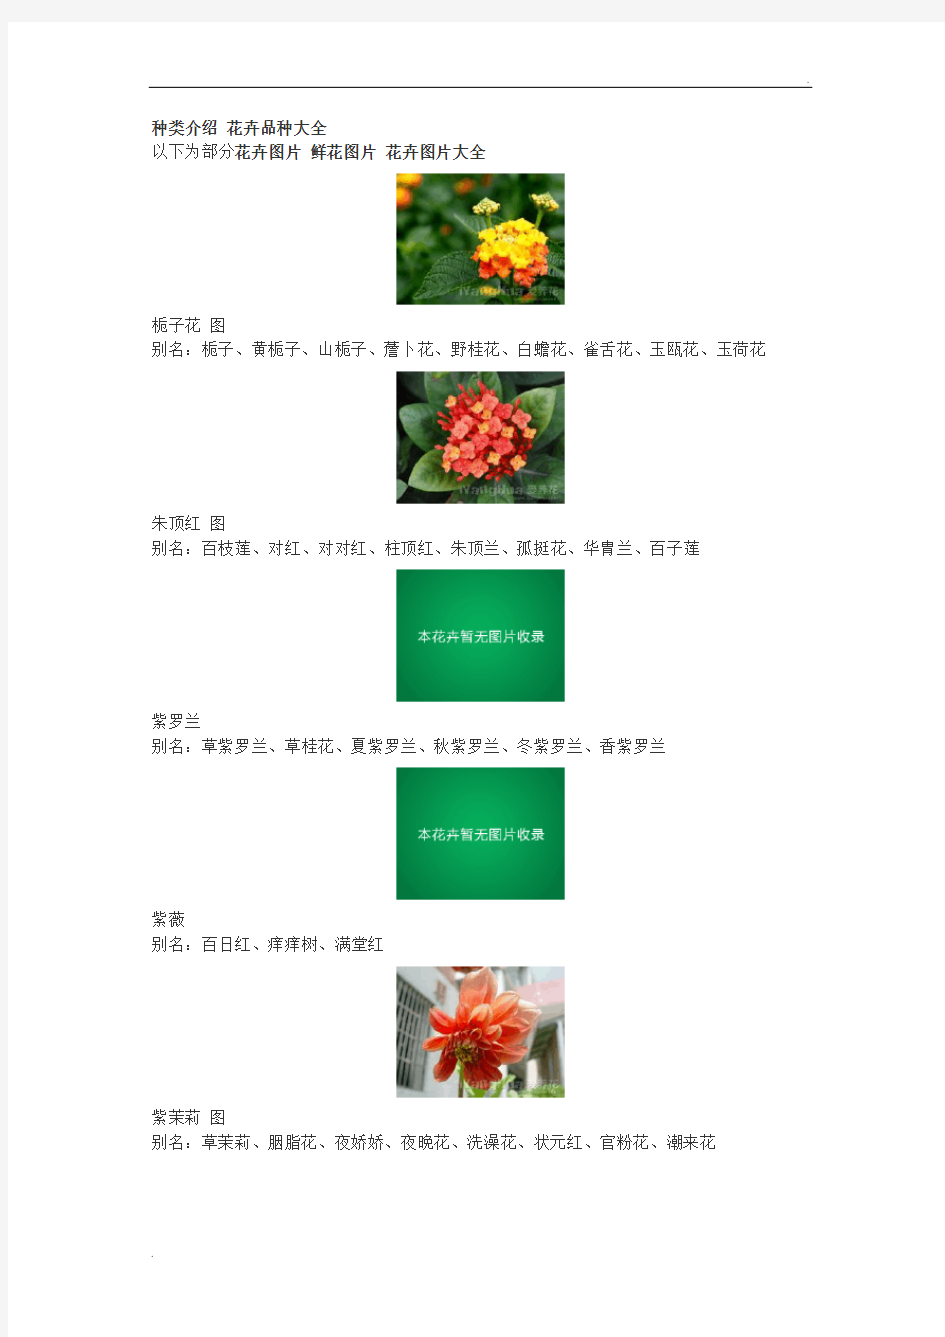 花的种类介绍 花卉品种大全 鲜花图片 花卉图片大全